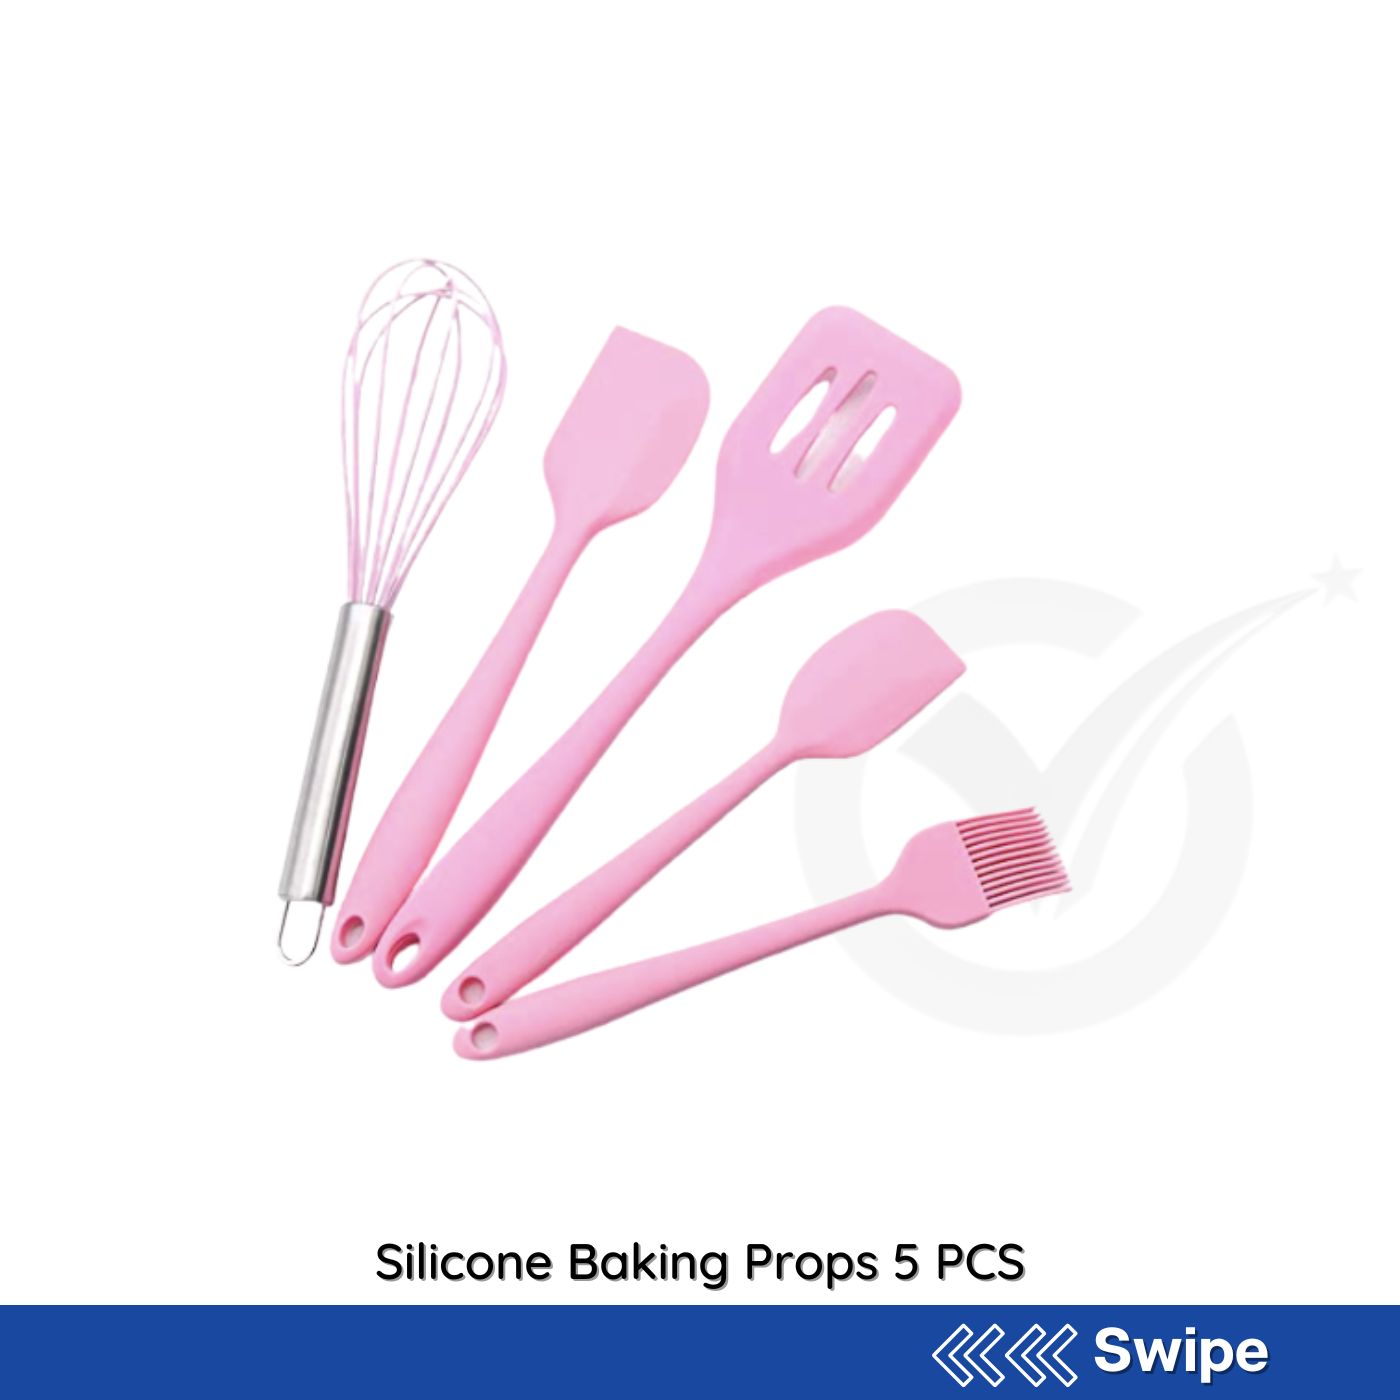 5 piece Silicone Baking Set - Rutos